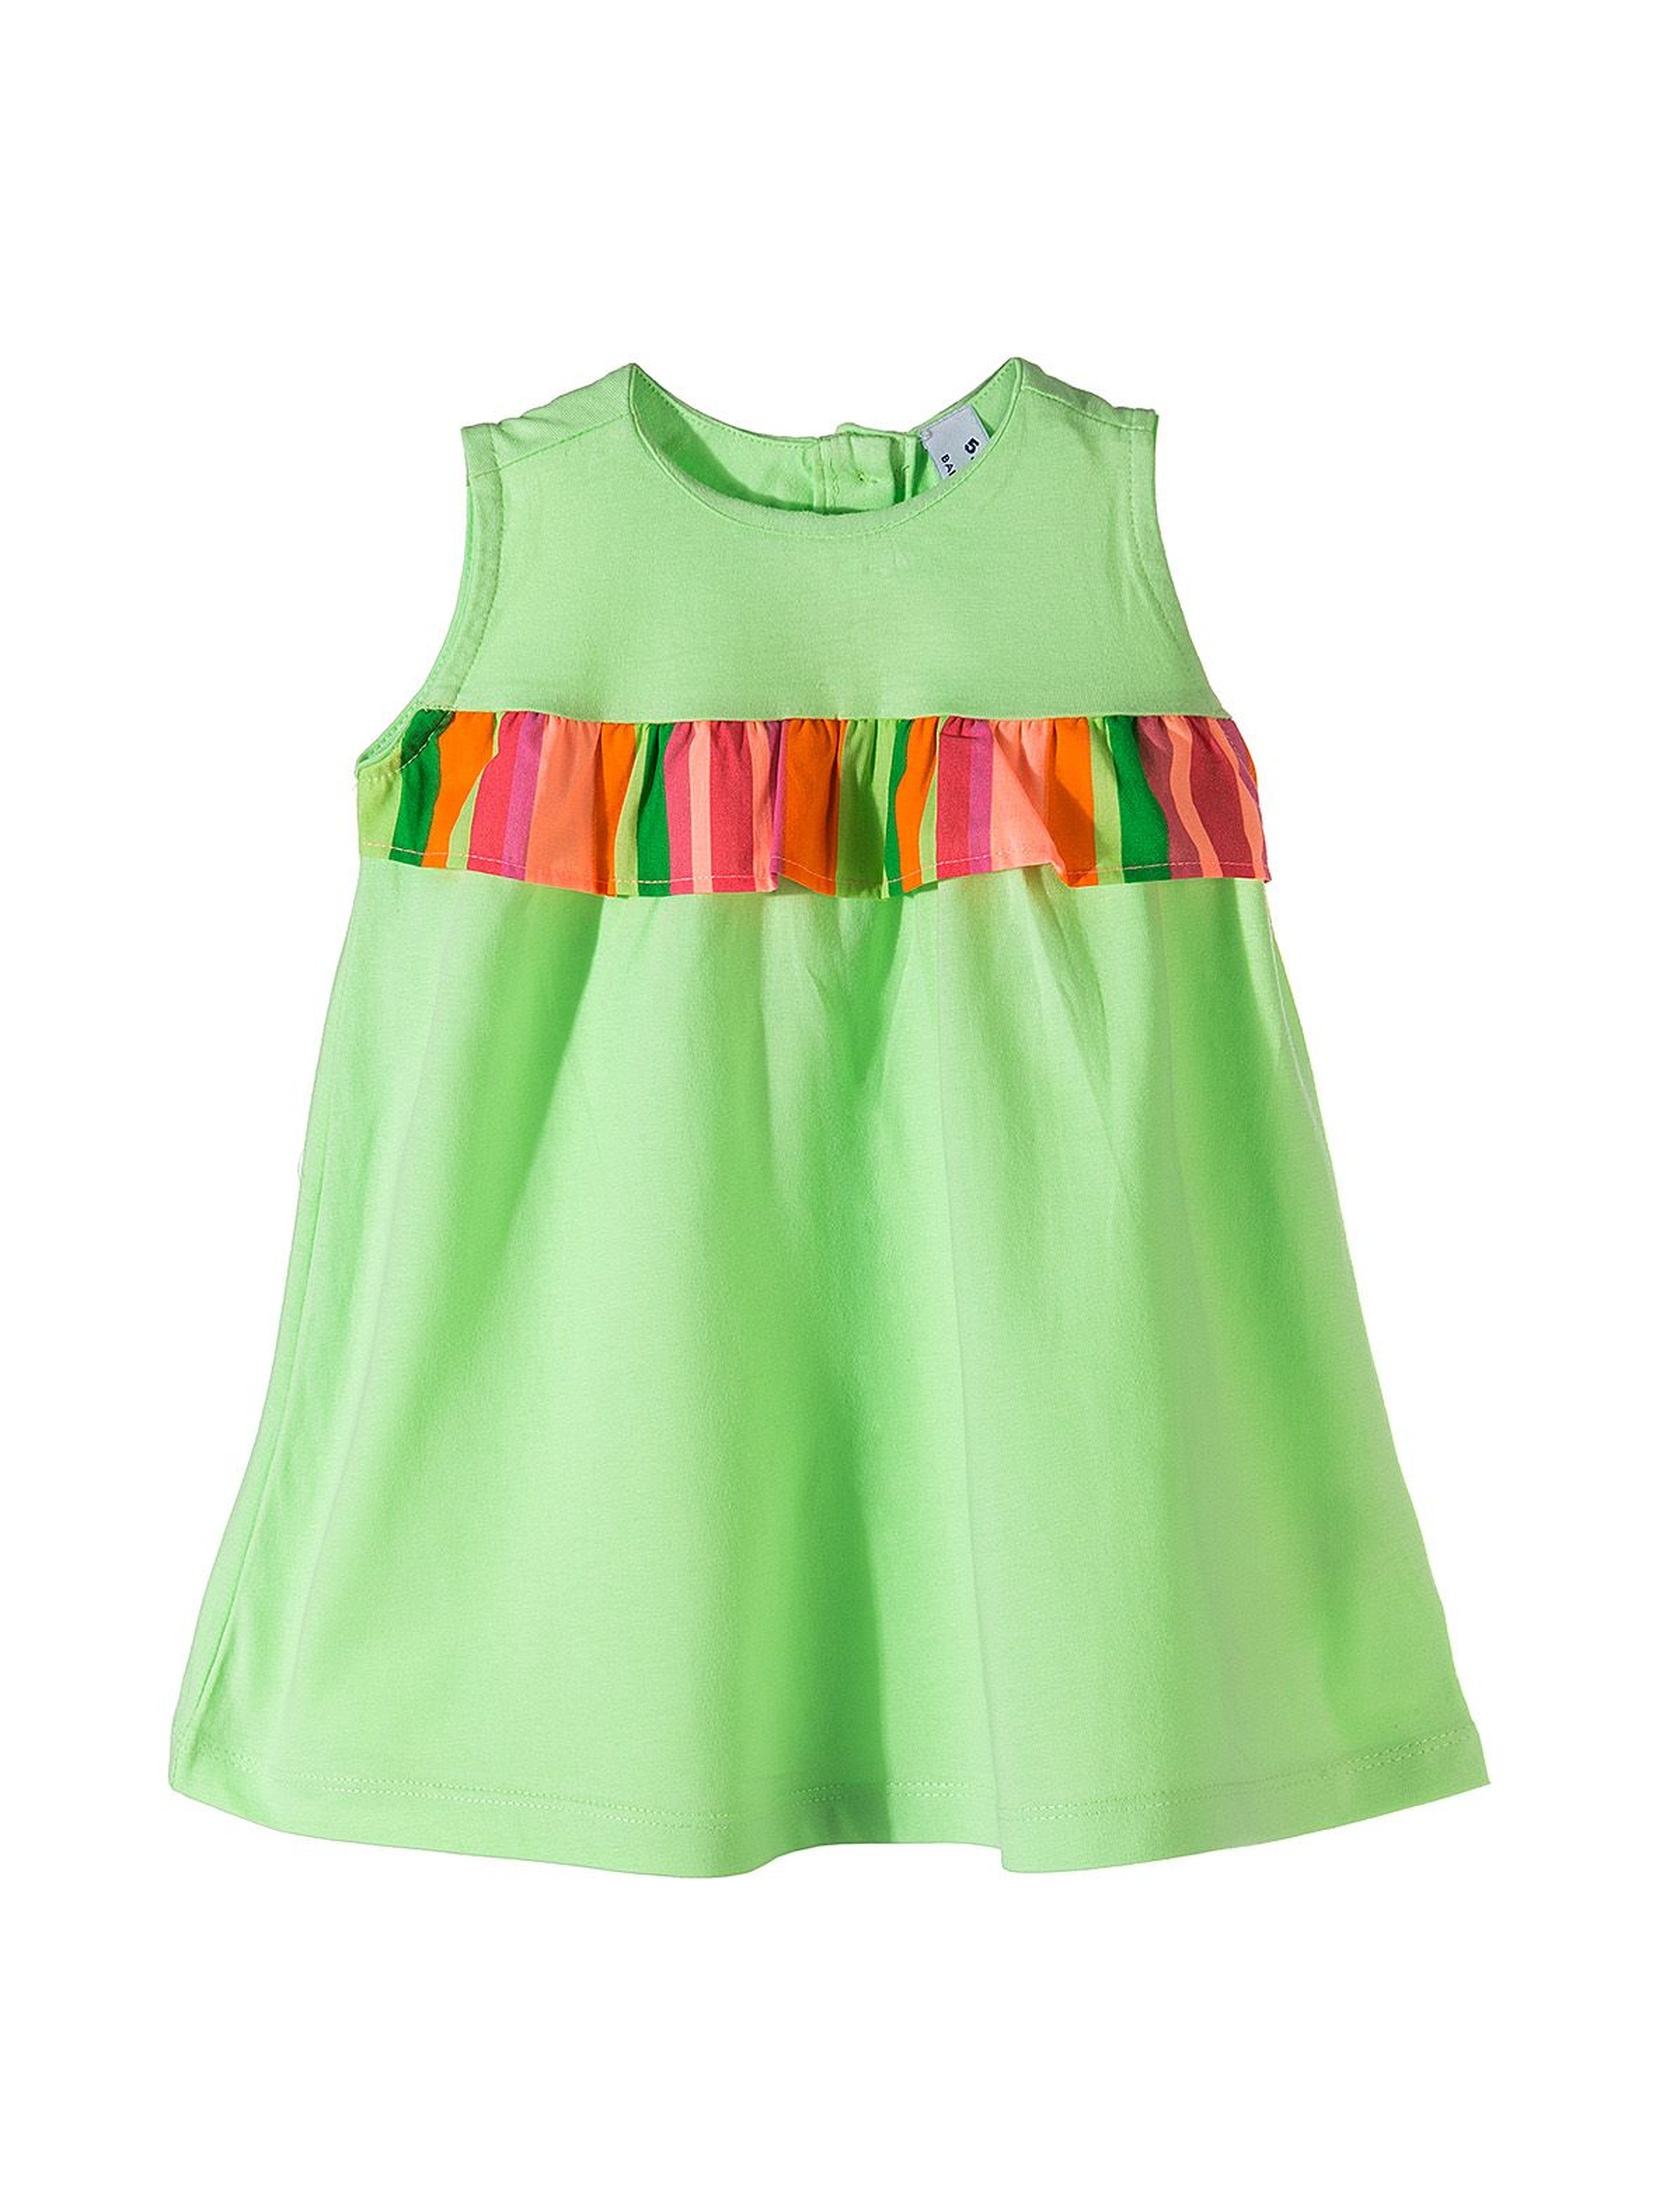 Kolorowa sukienka dla niemowlaka